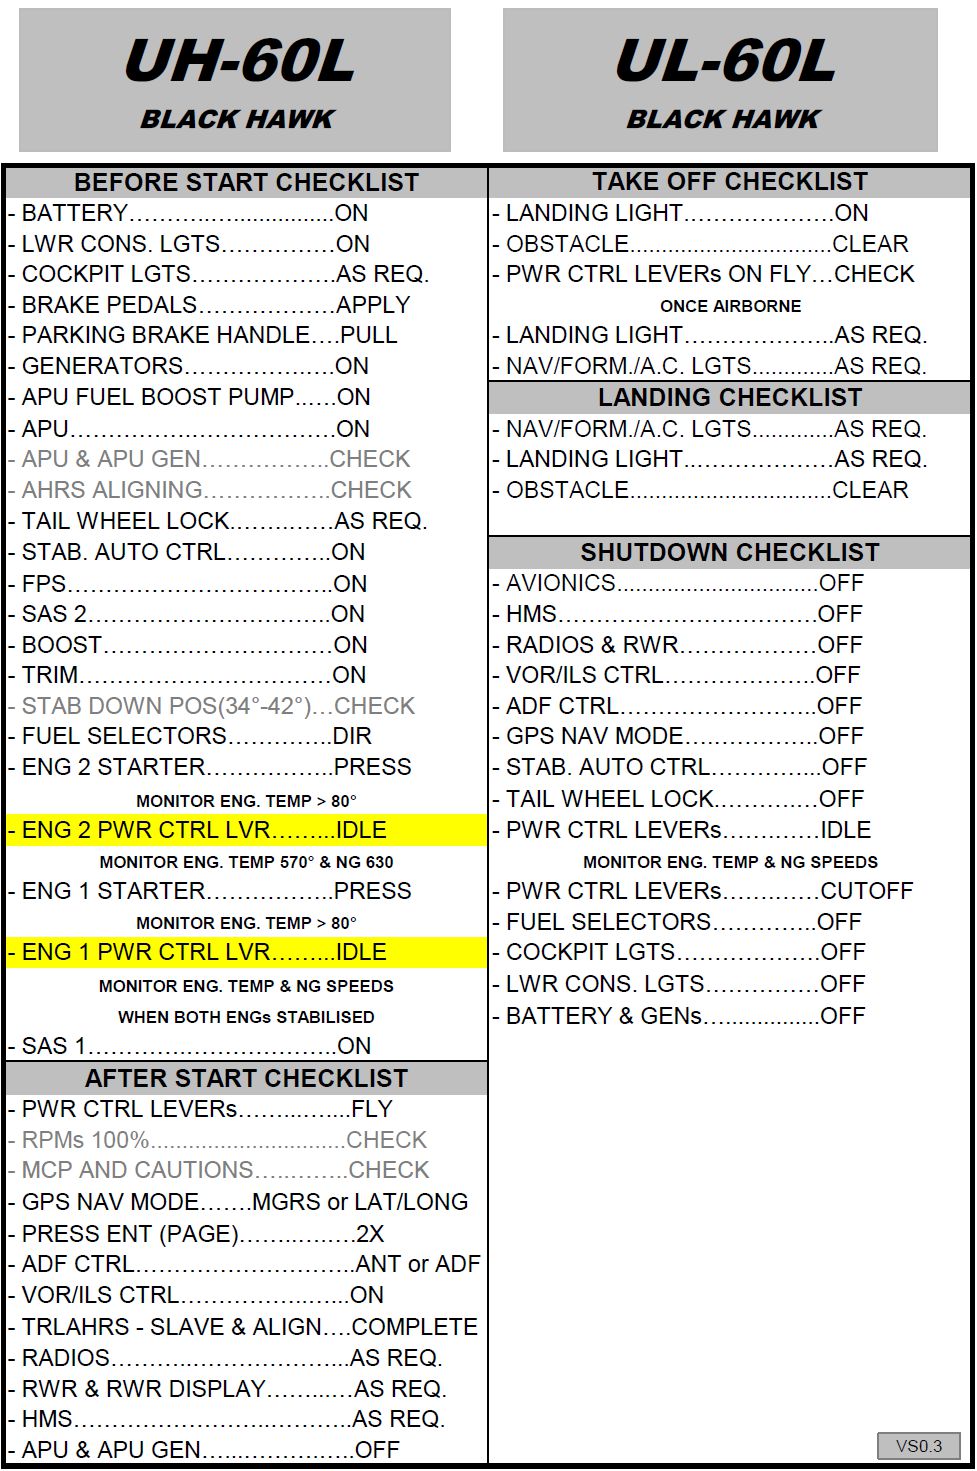 DCS MOD UH-60L Quick Checklist (vs 0.3)